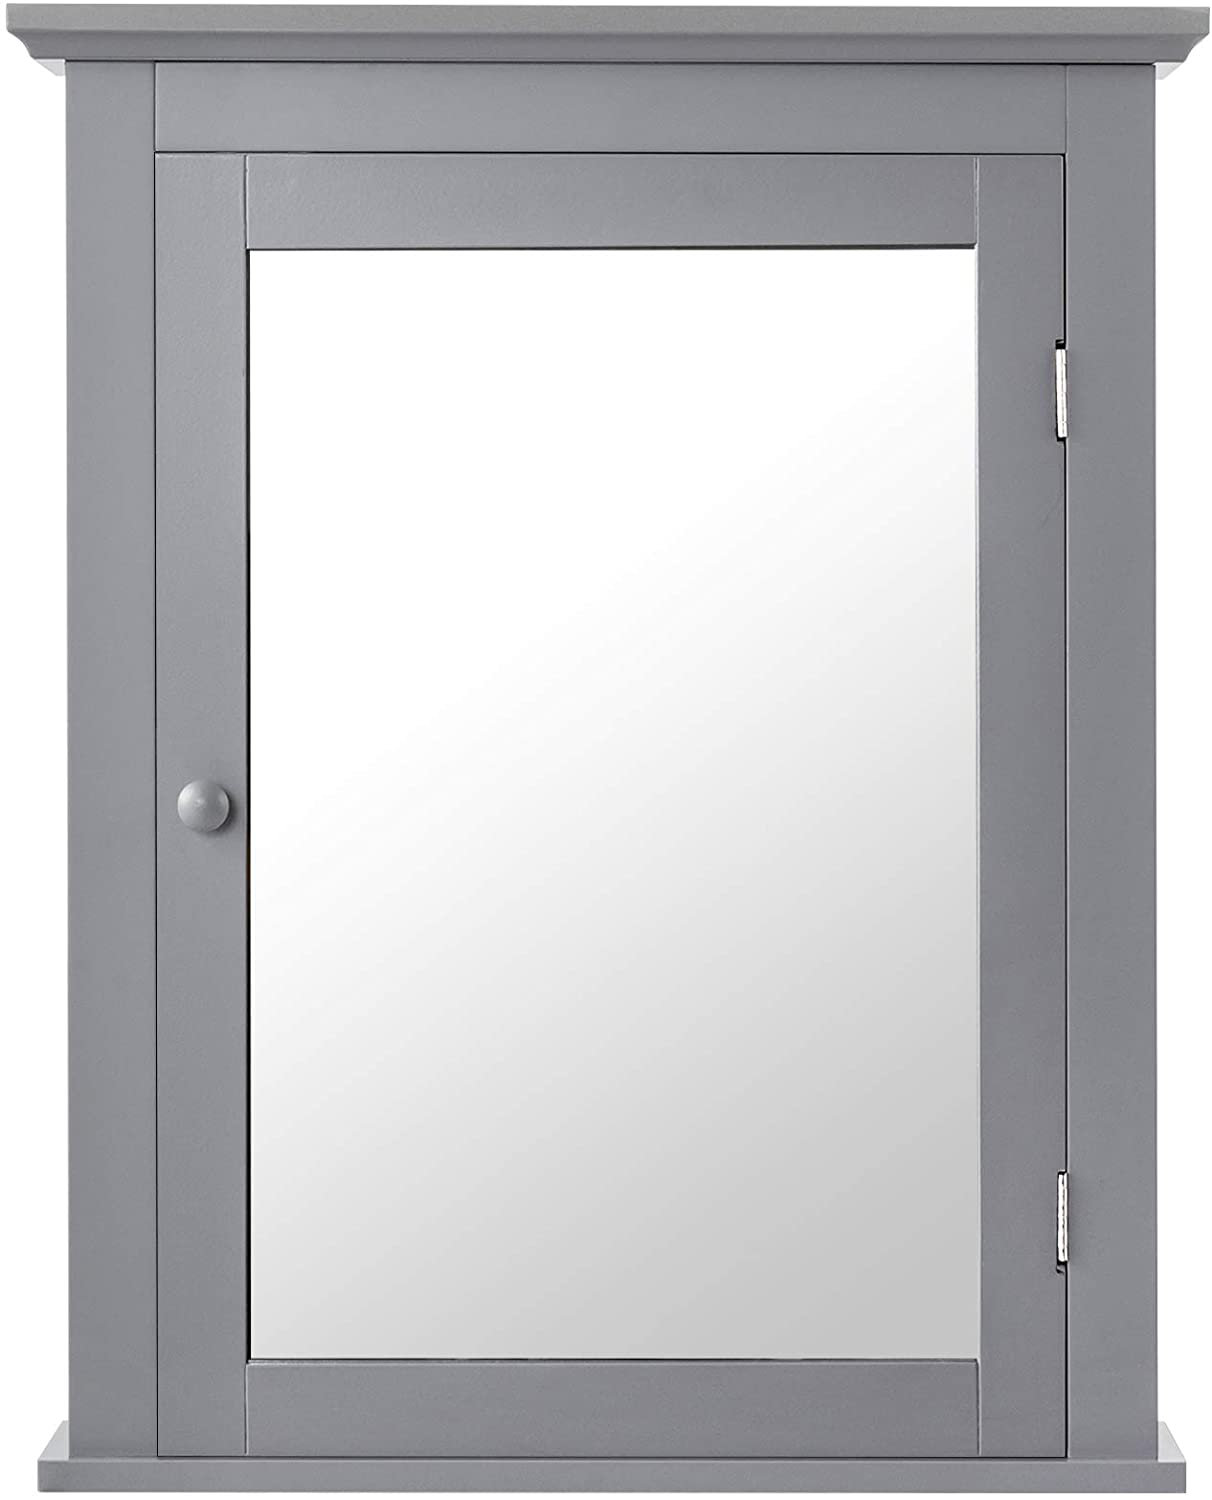 Lark Manor E37F442A8A2142B59DE1FD1A700F209A Alyxandrea Surface Mount Framed 1 of Doors Medicine Cabinet with 2 Adjustable Shelves Finish: White